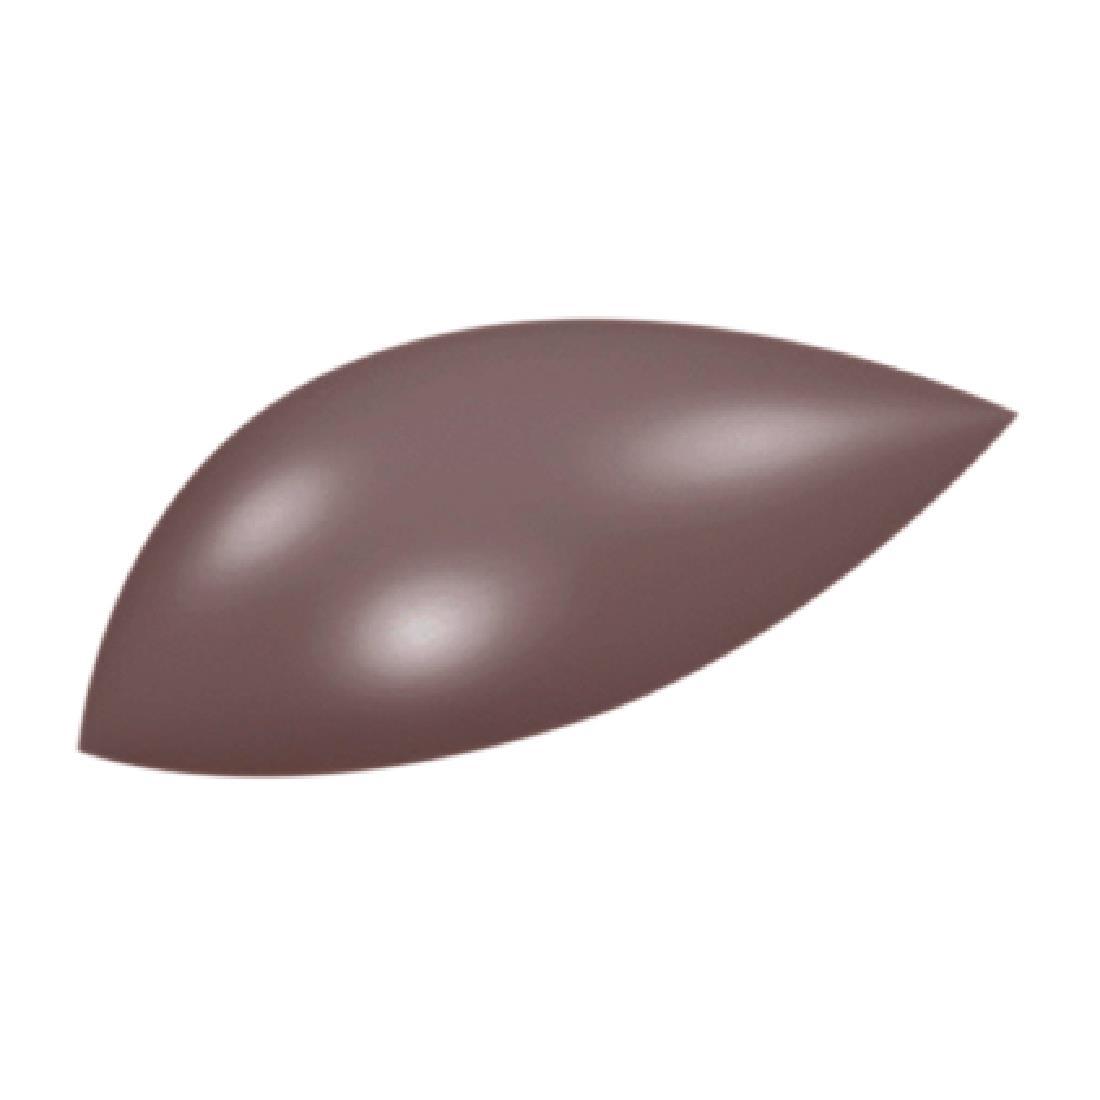 Schneider Chocolate Mould Almond - DW298  - 6